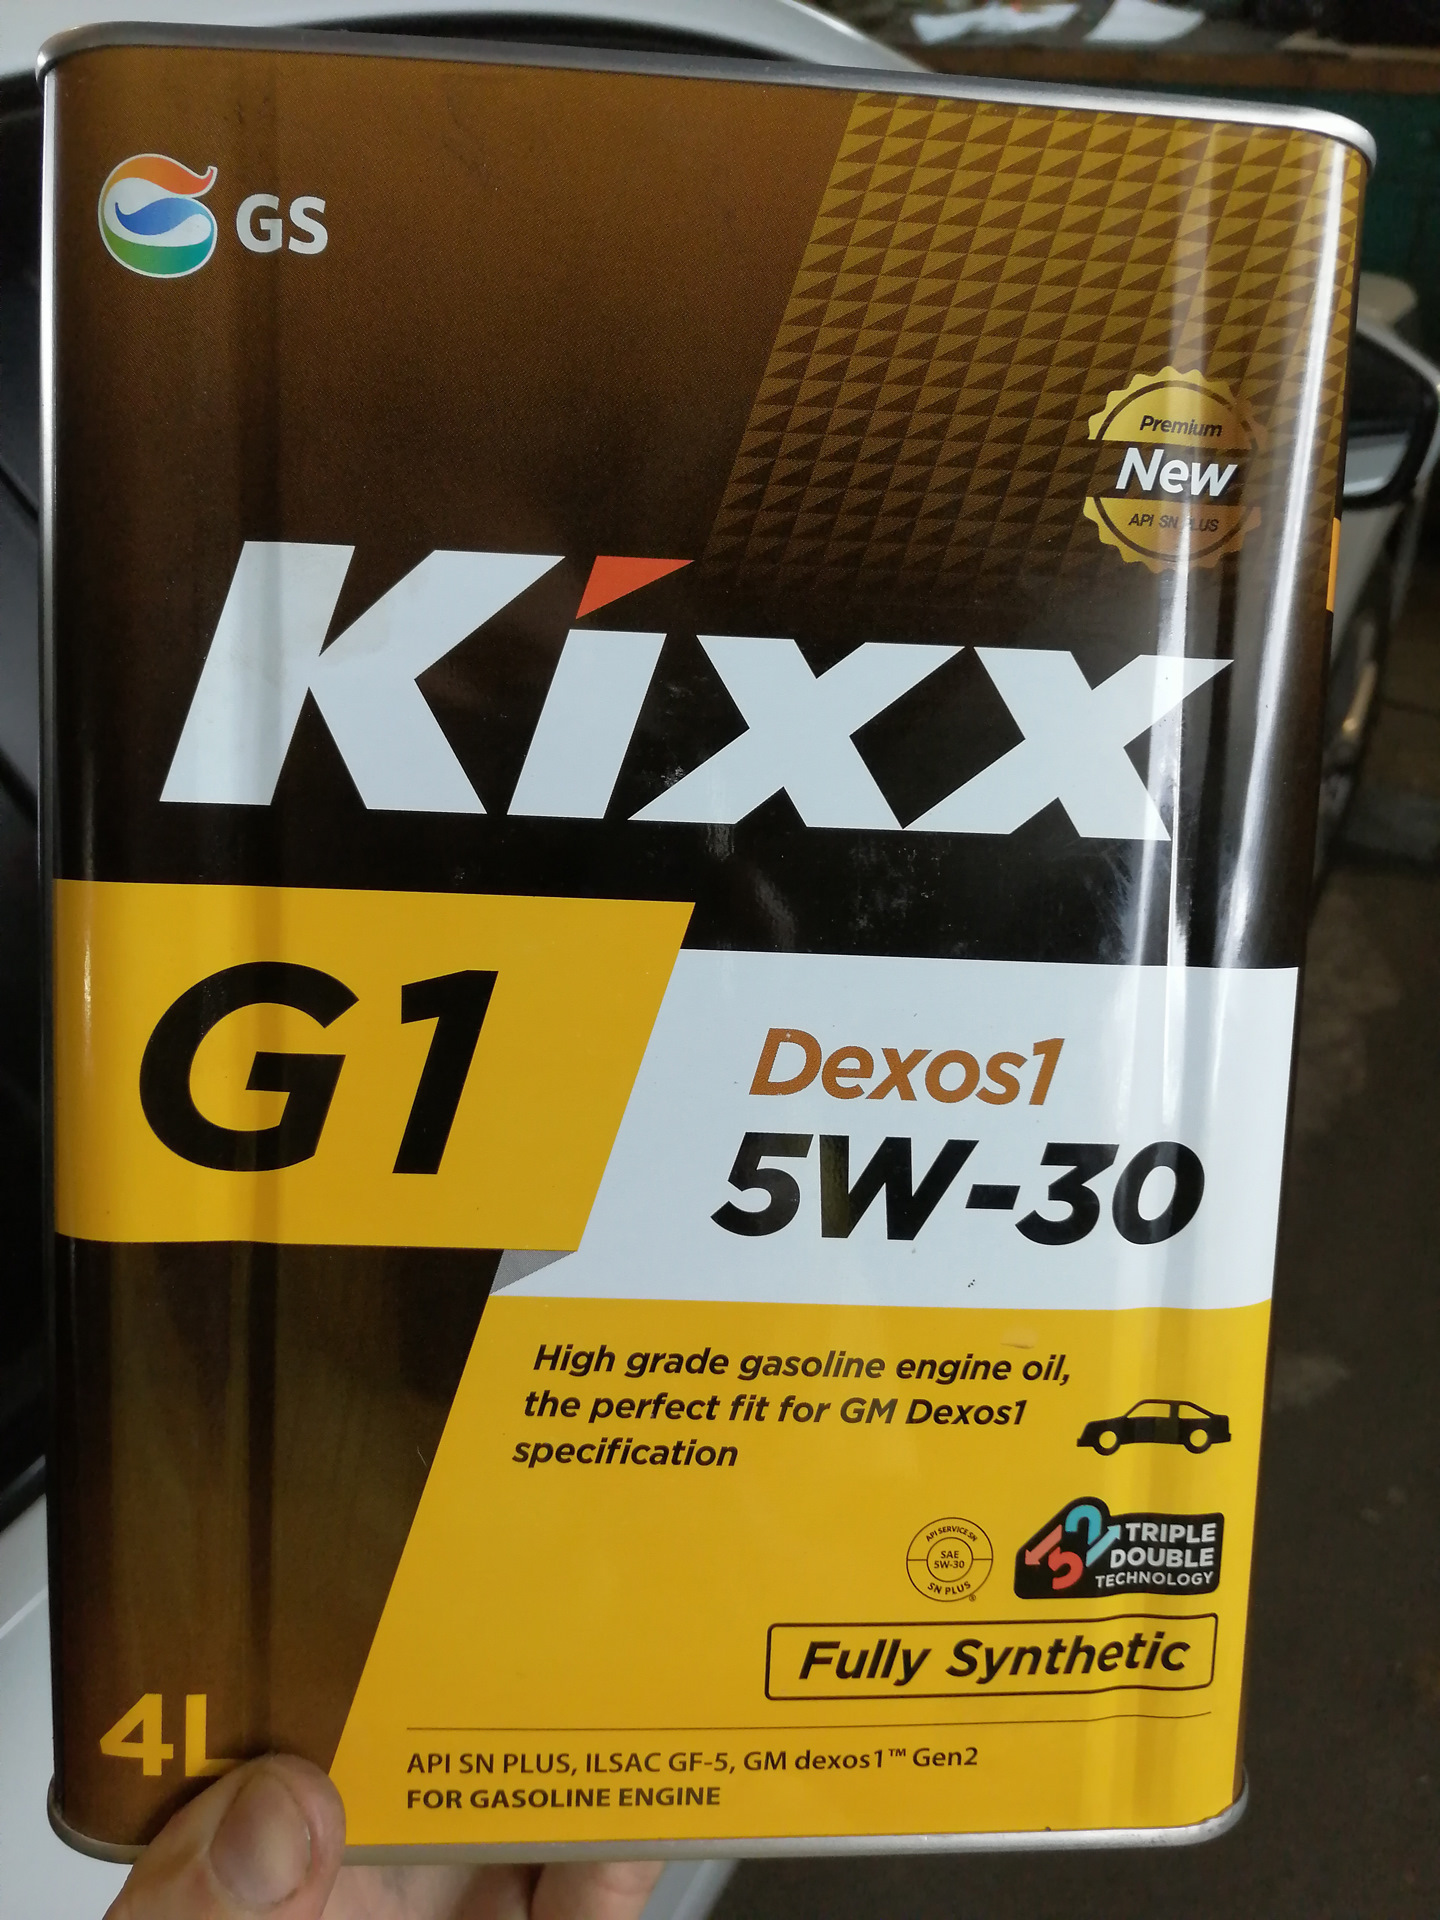 Масло kixx 5w30 g1. Масло Кикс 5w30 дексос 2. Масло Кикс 5w30 синтетика для дизеля. Kixx g1 5w-30. Kixx 5w30 g1 dexos1 артикул.